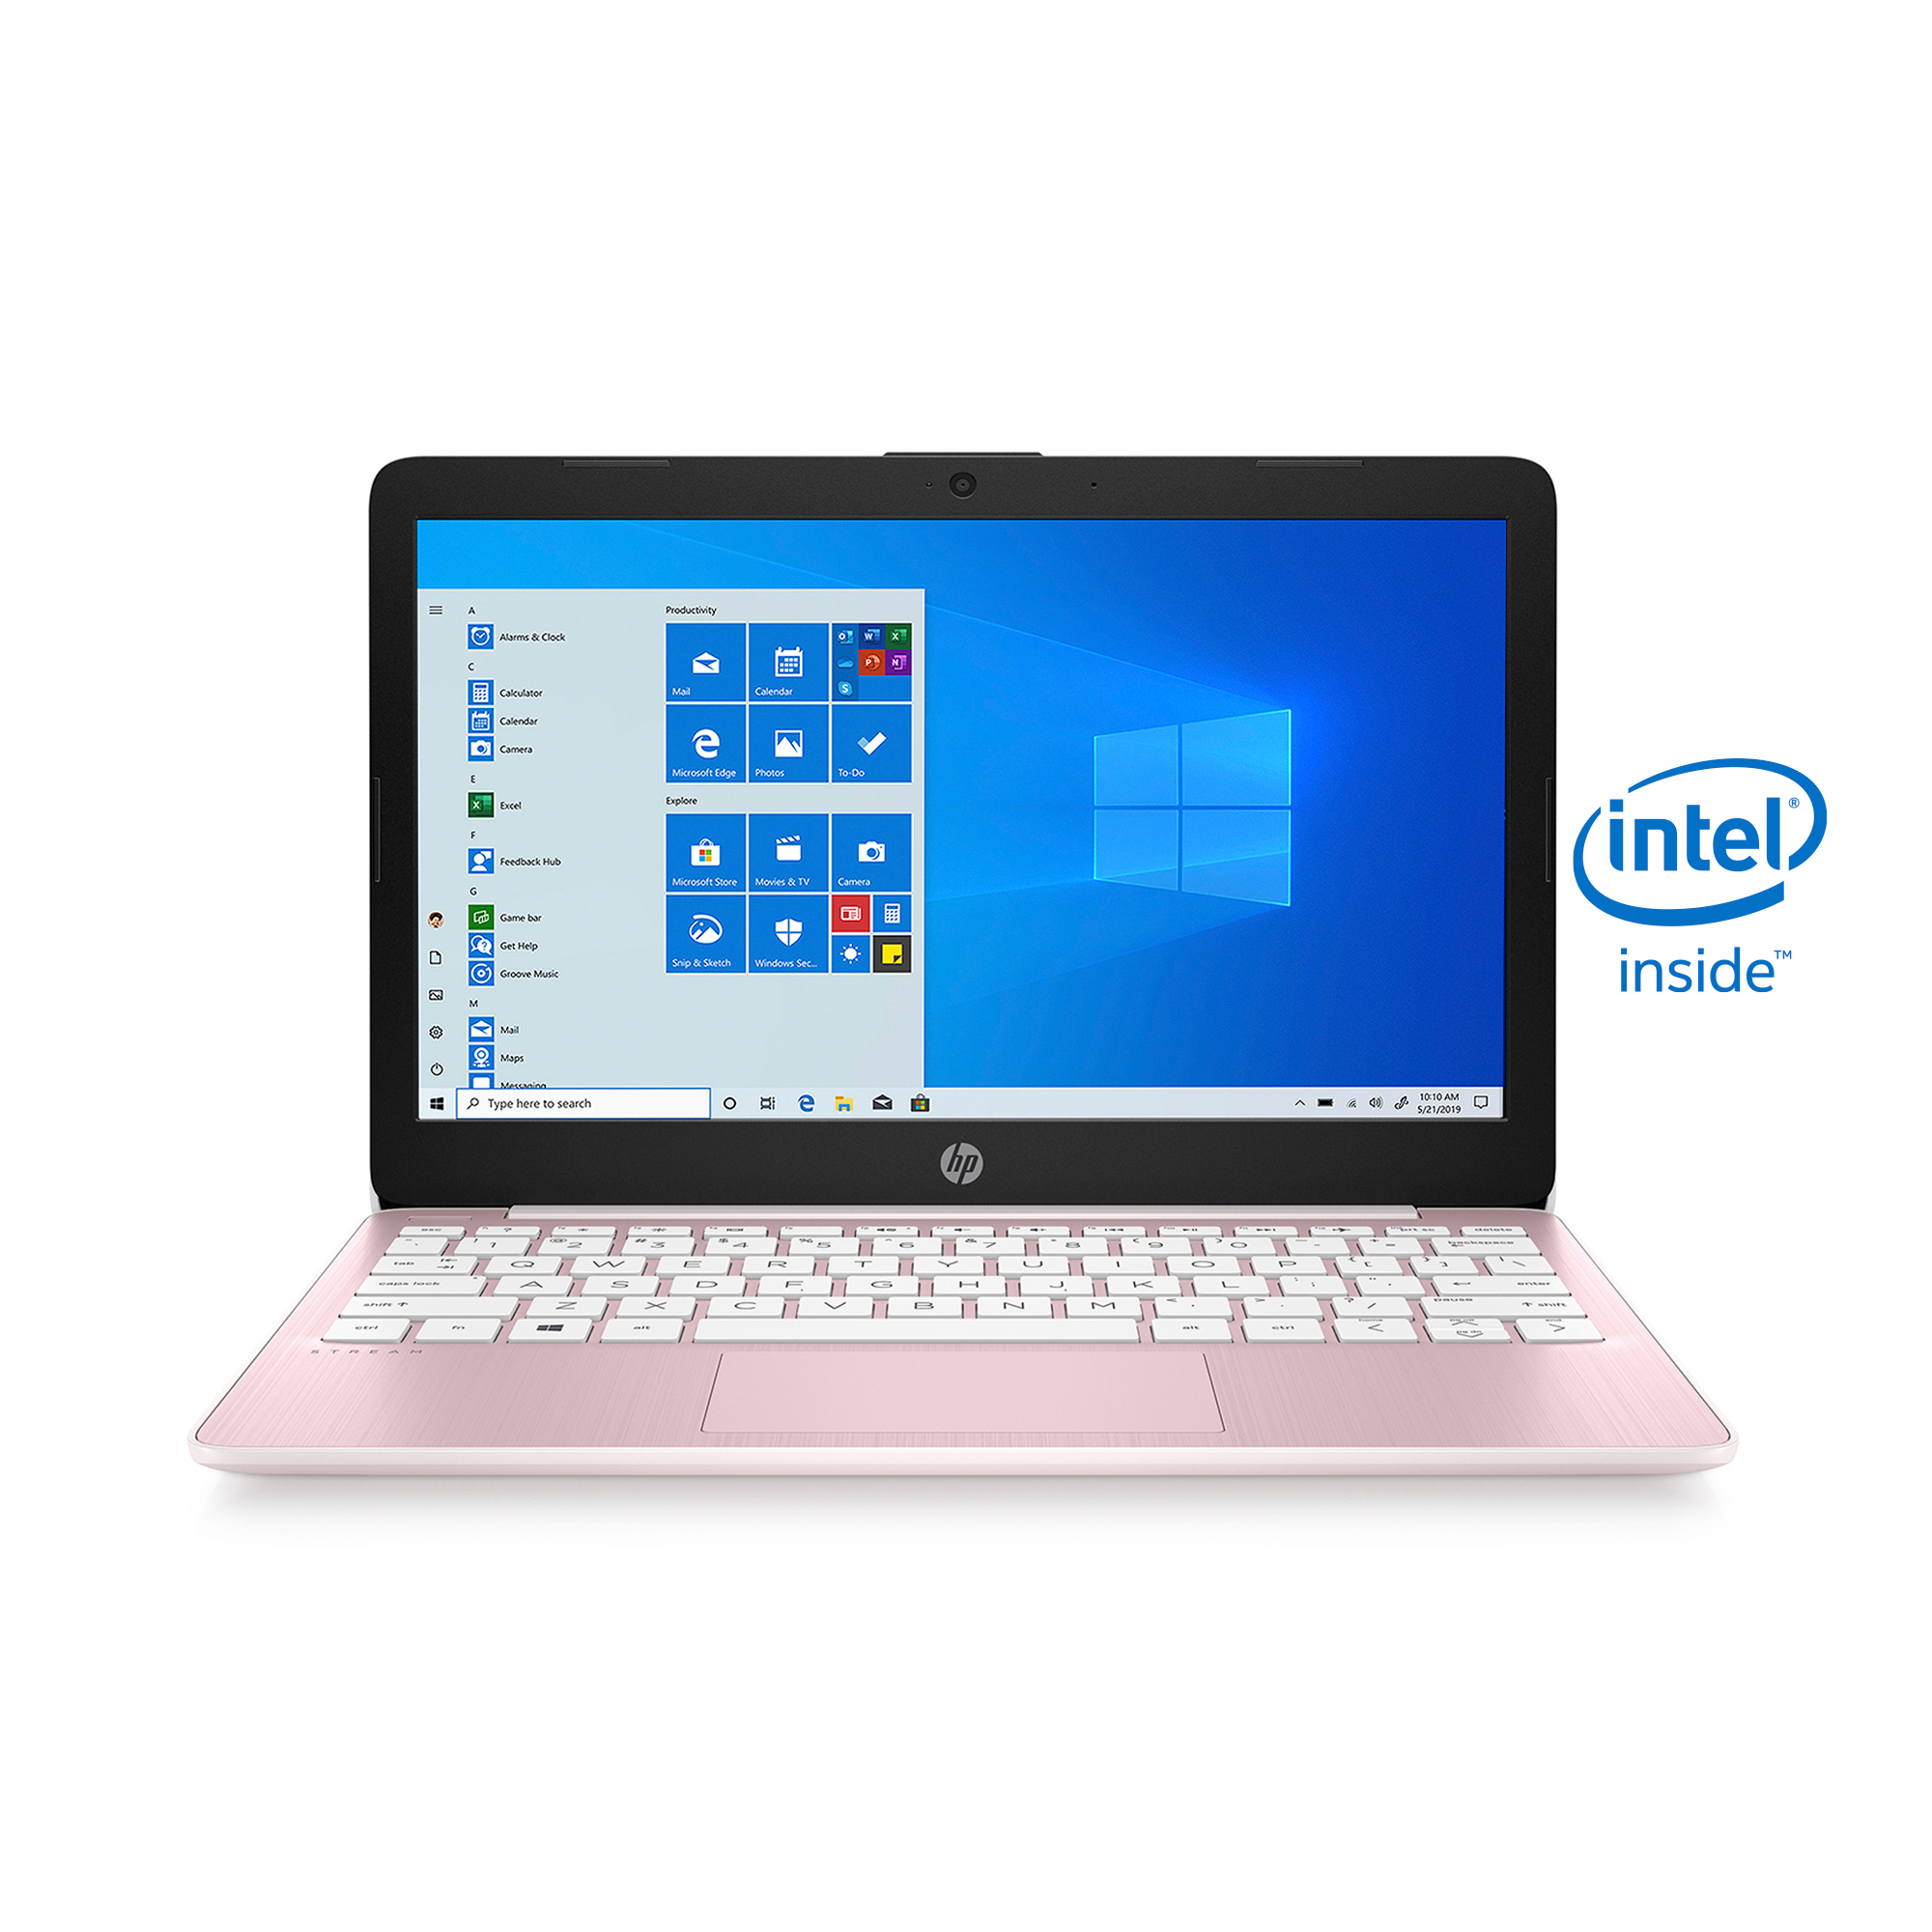 HP Stream 11.6" PC Laptop, Intel Celeron N4020, 4GB RAM, 64GB eMMC, Windows 10 Home, Rose Pink, 11-ak0080wm - image 1 of 8